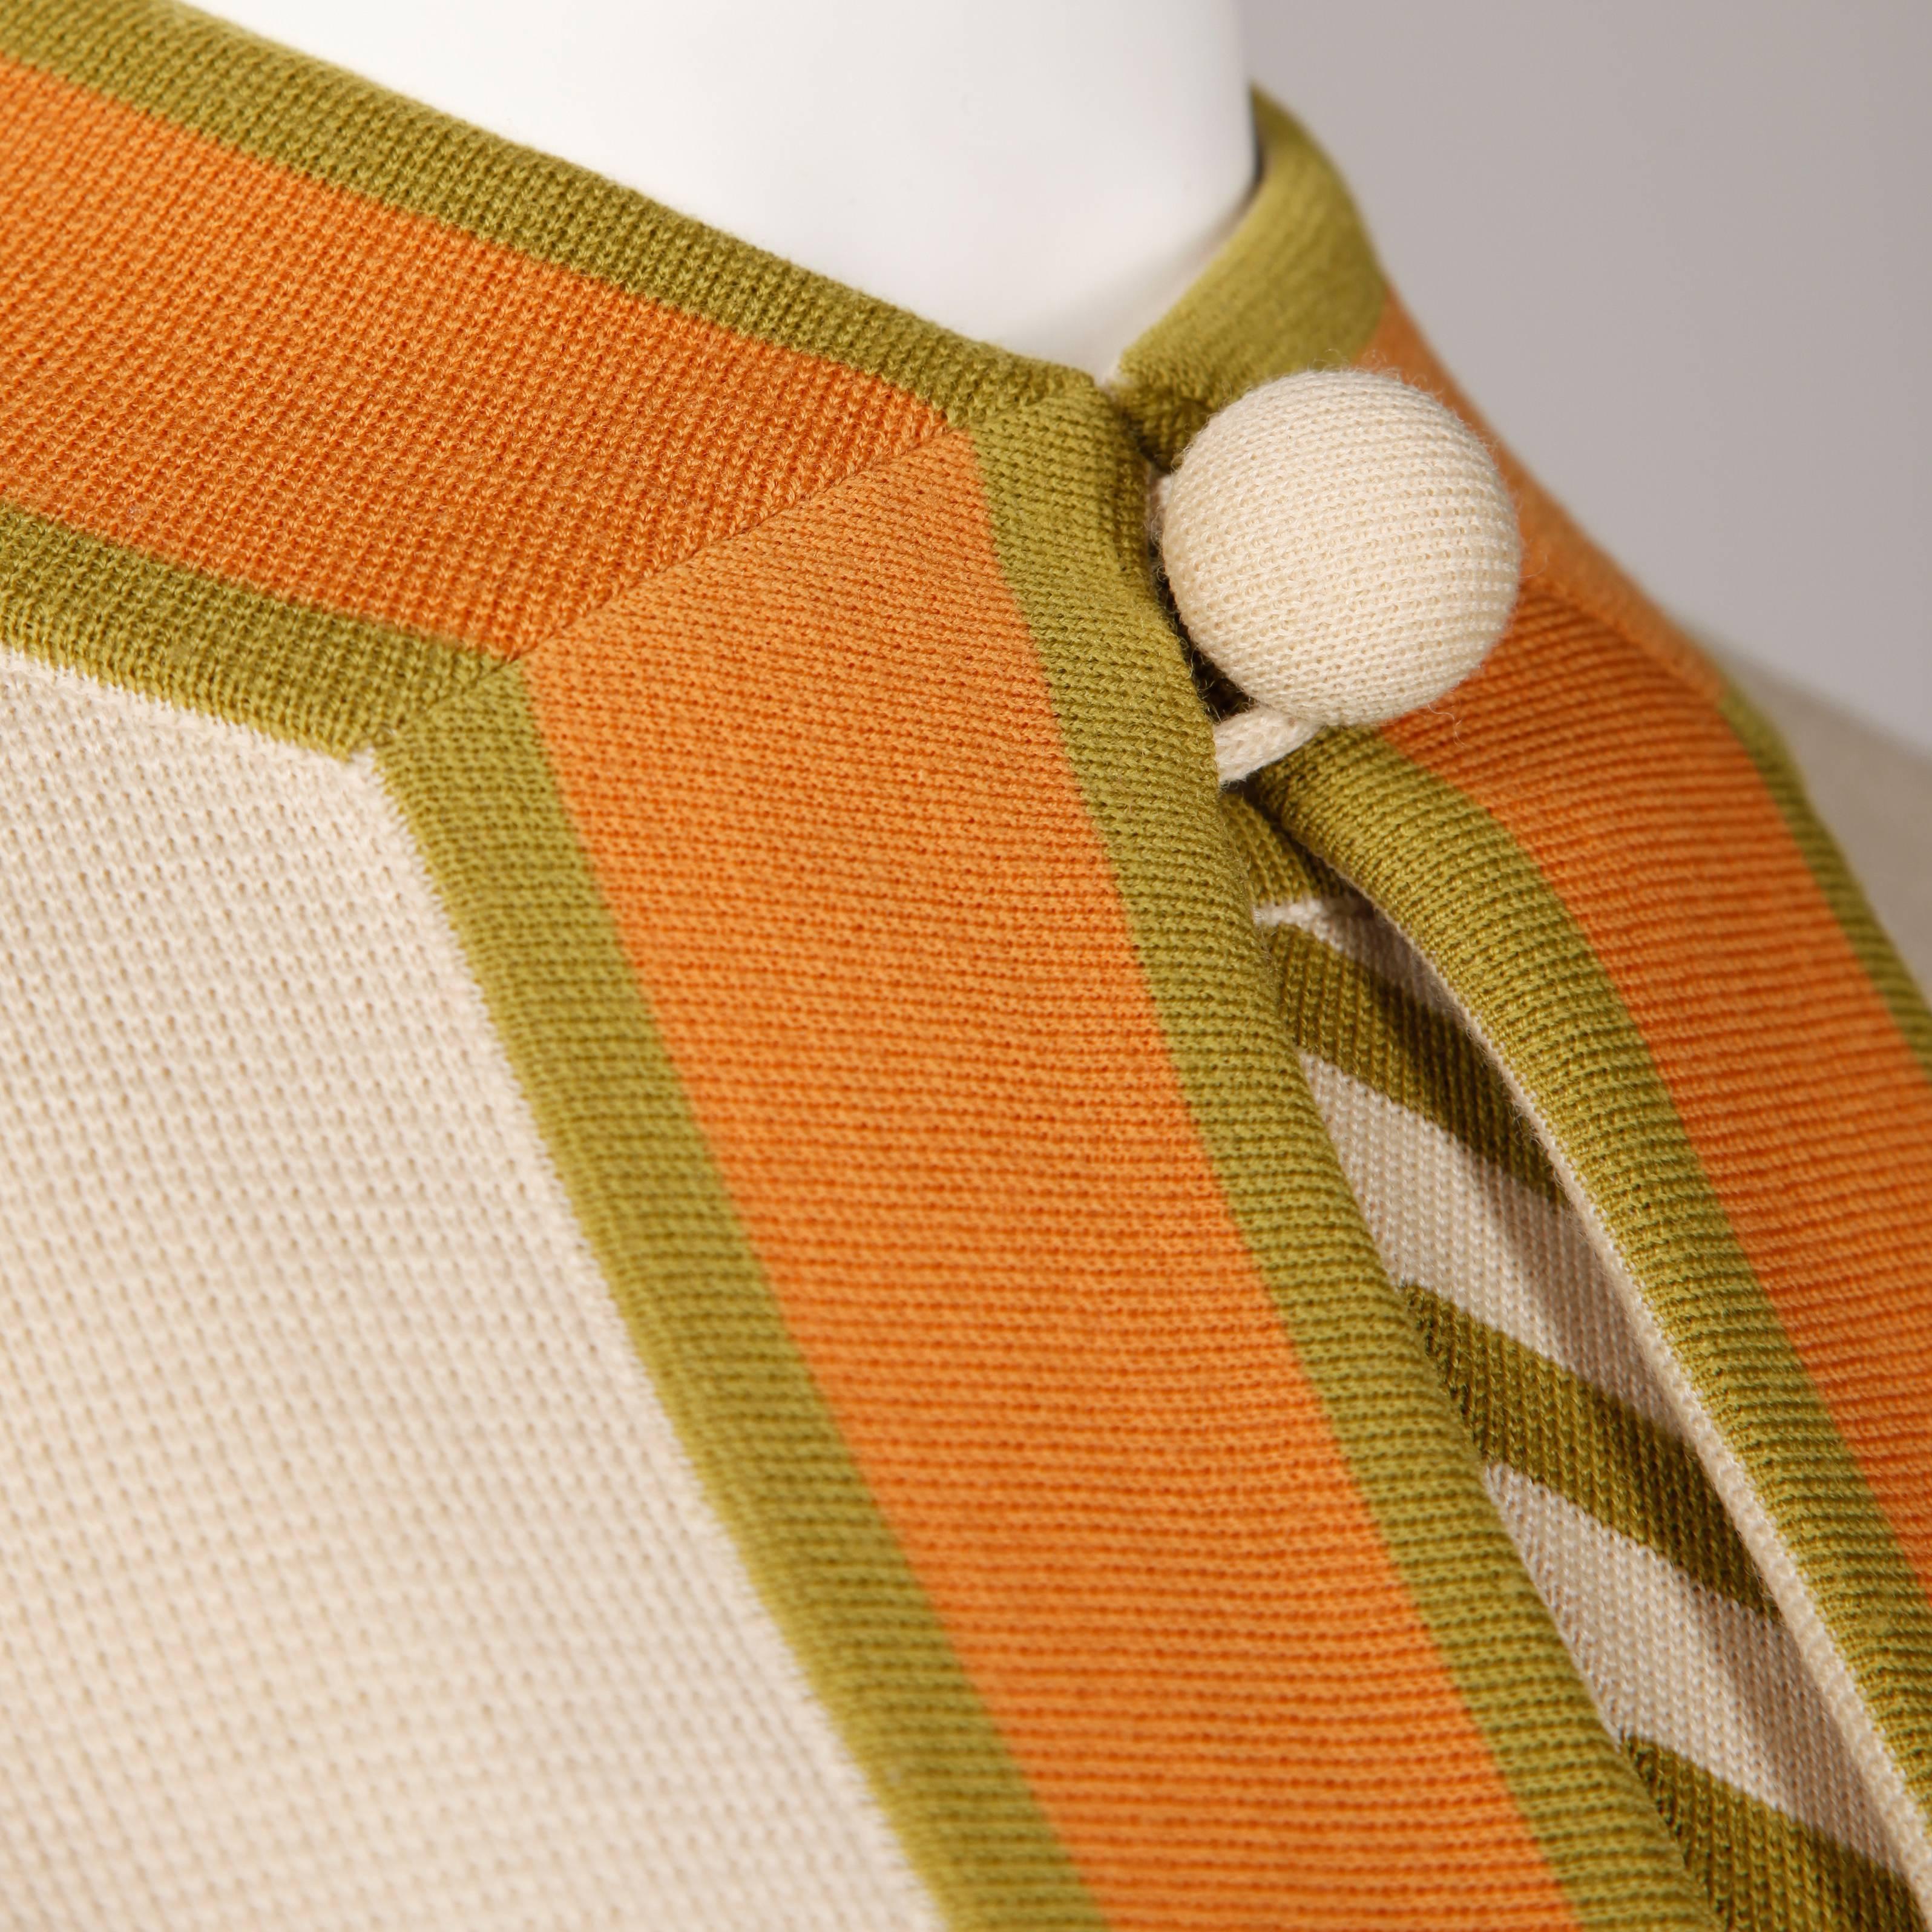 Beige Gianni Ferri for Banff Ltd 1960s Vintage Color Block Coat + Dress 2-Pc Ensemble